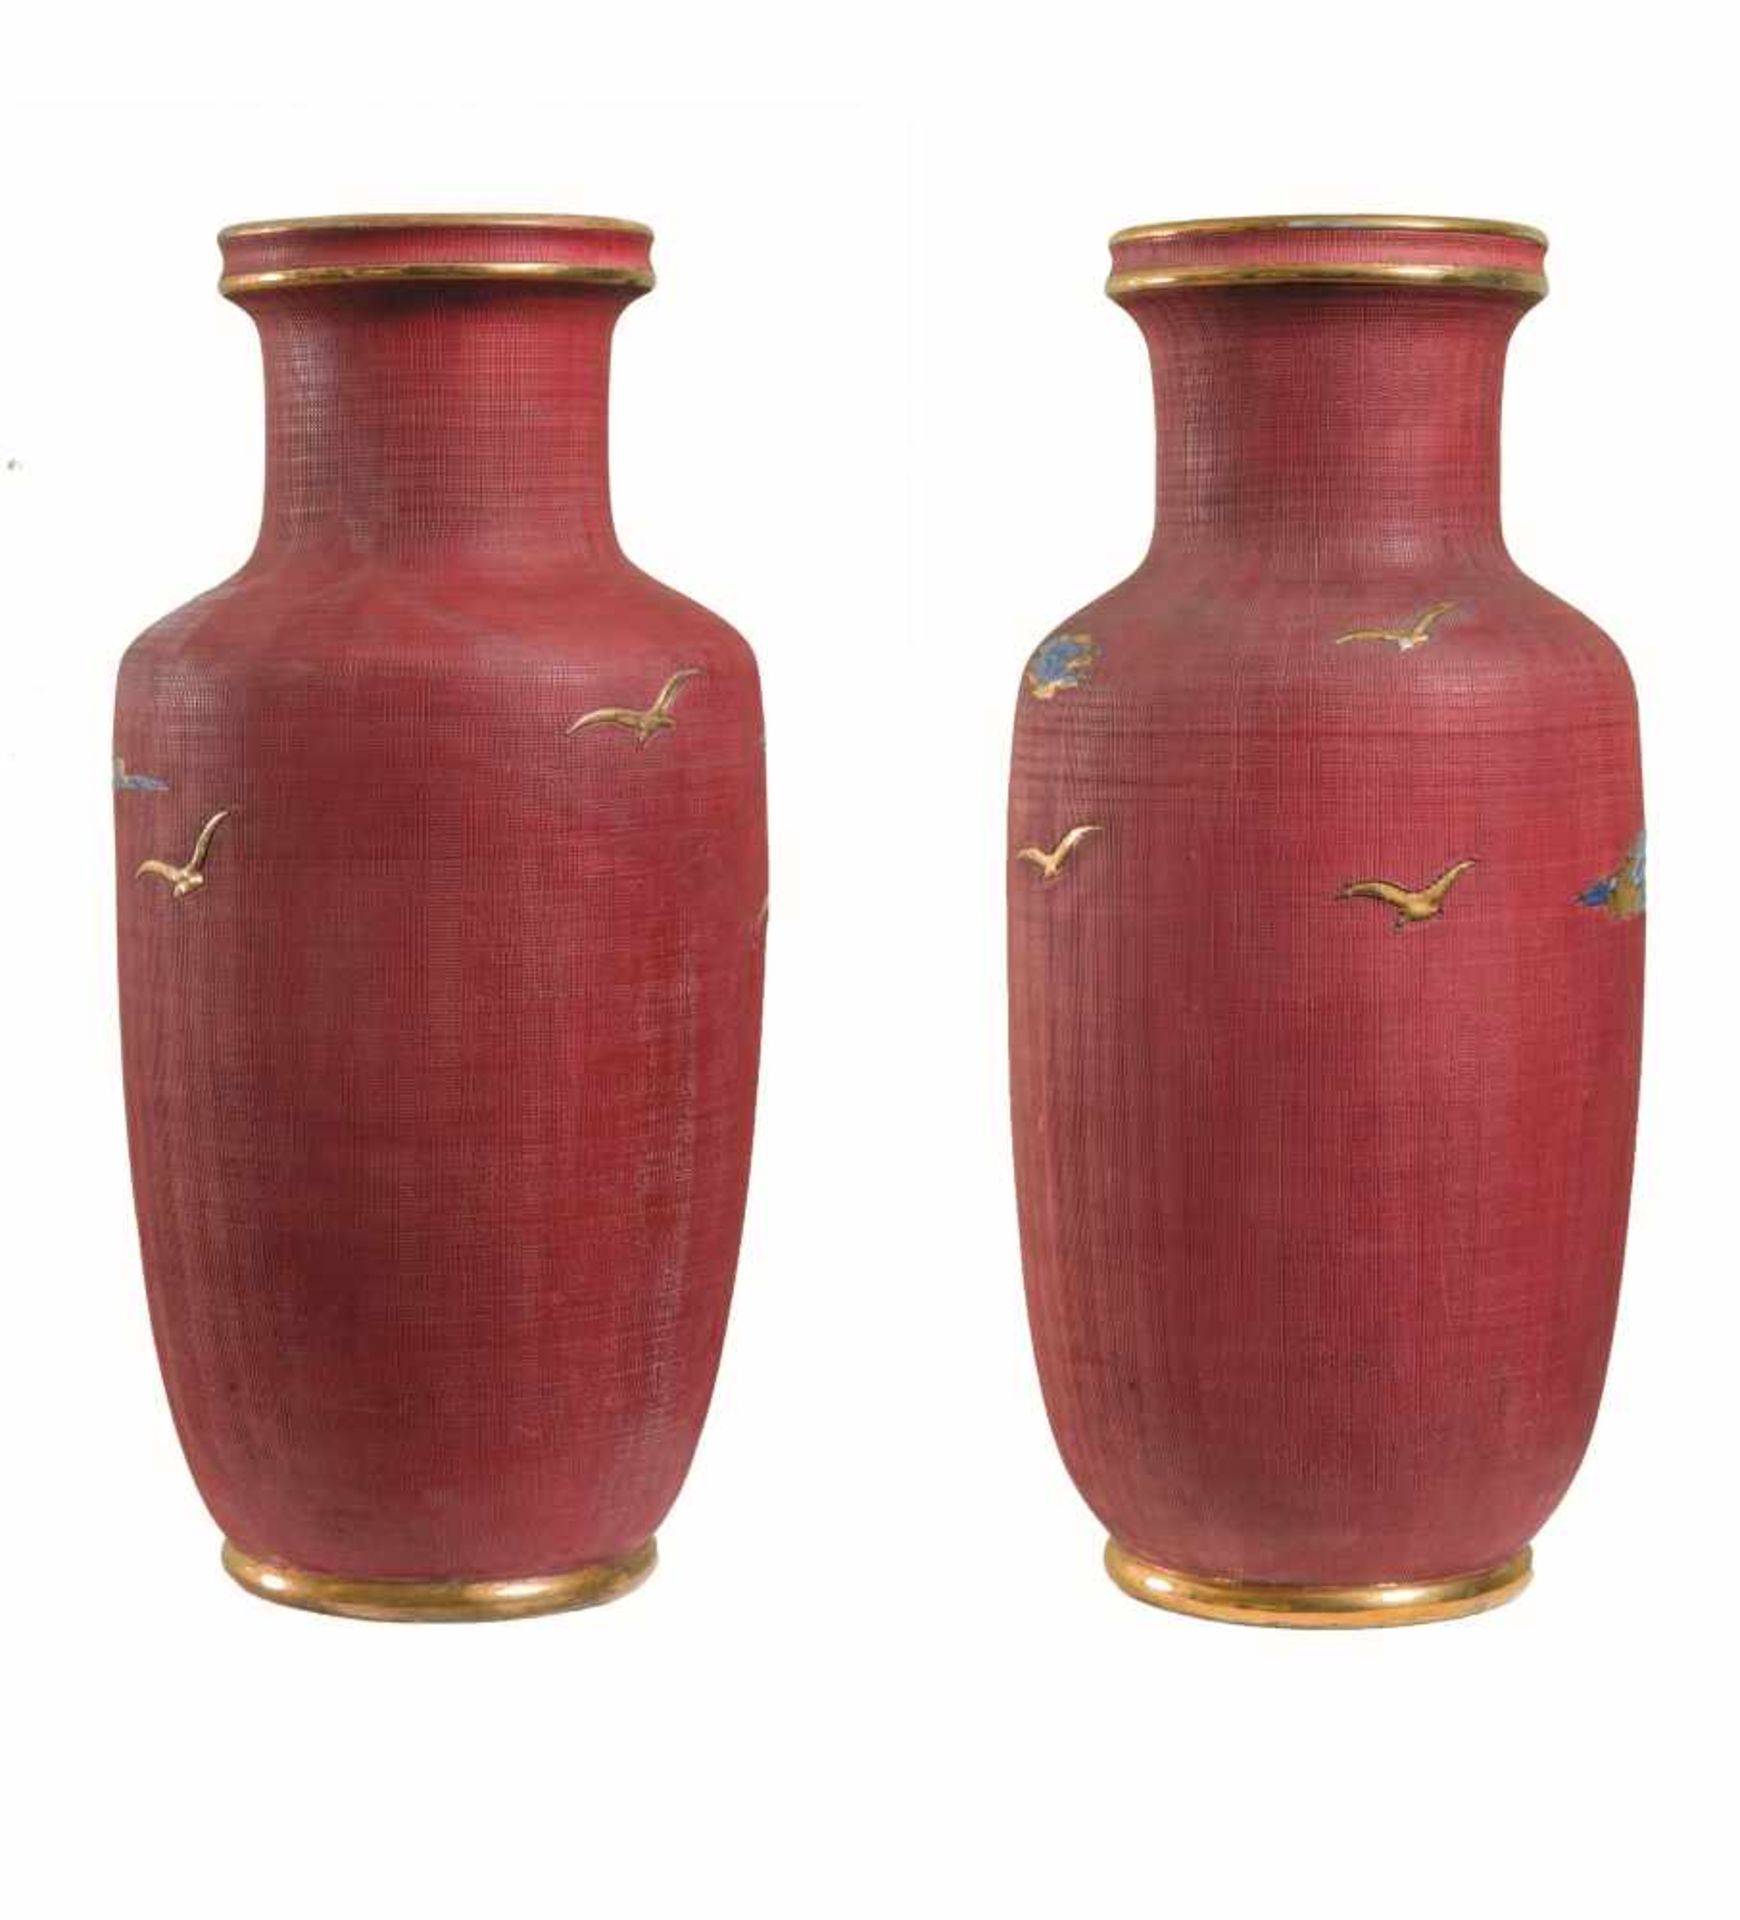 ZACCAGNINI, XX secolo. Coppia di vasi in ceramica policroma raffiguranti velieri. Cm 52, diametro: - Bild 2 aus 3